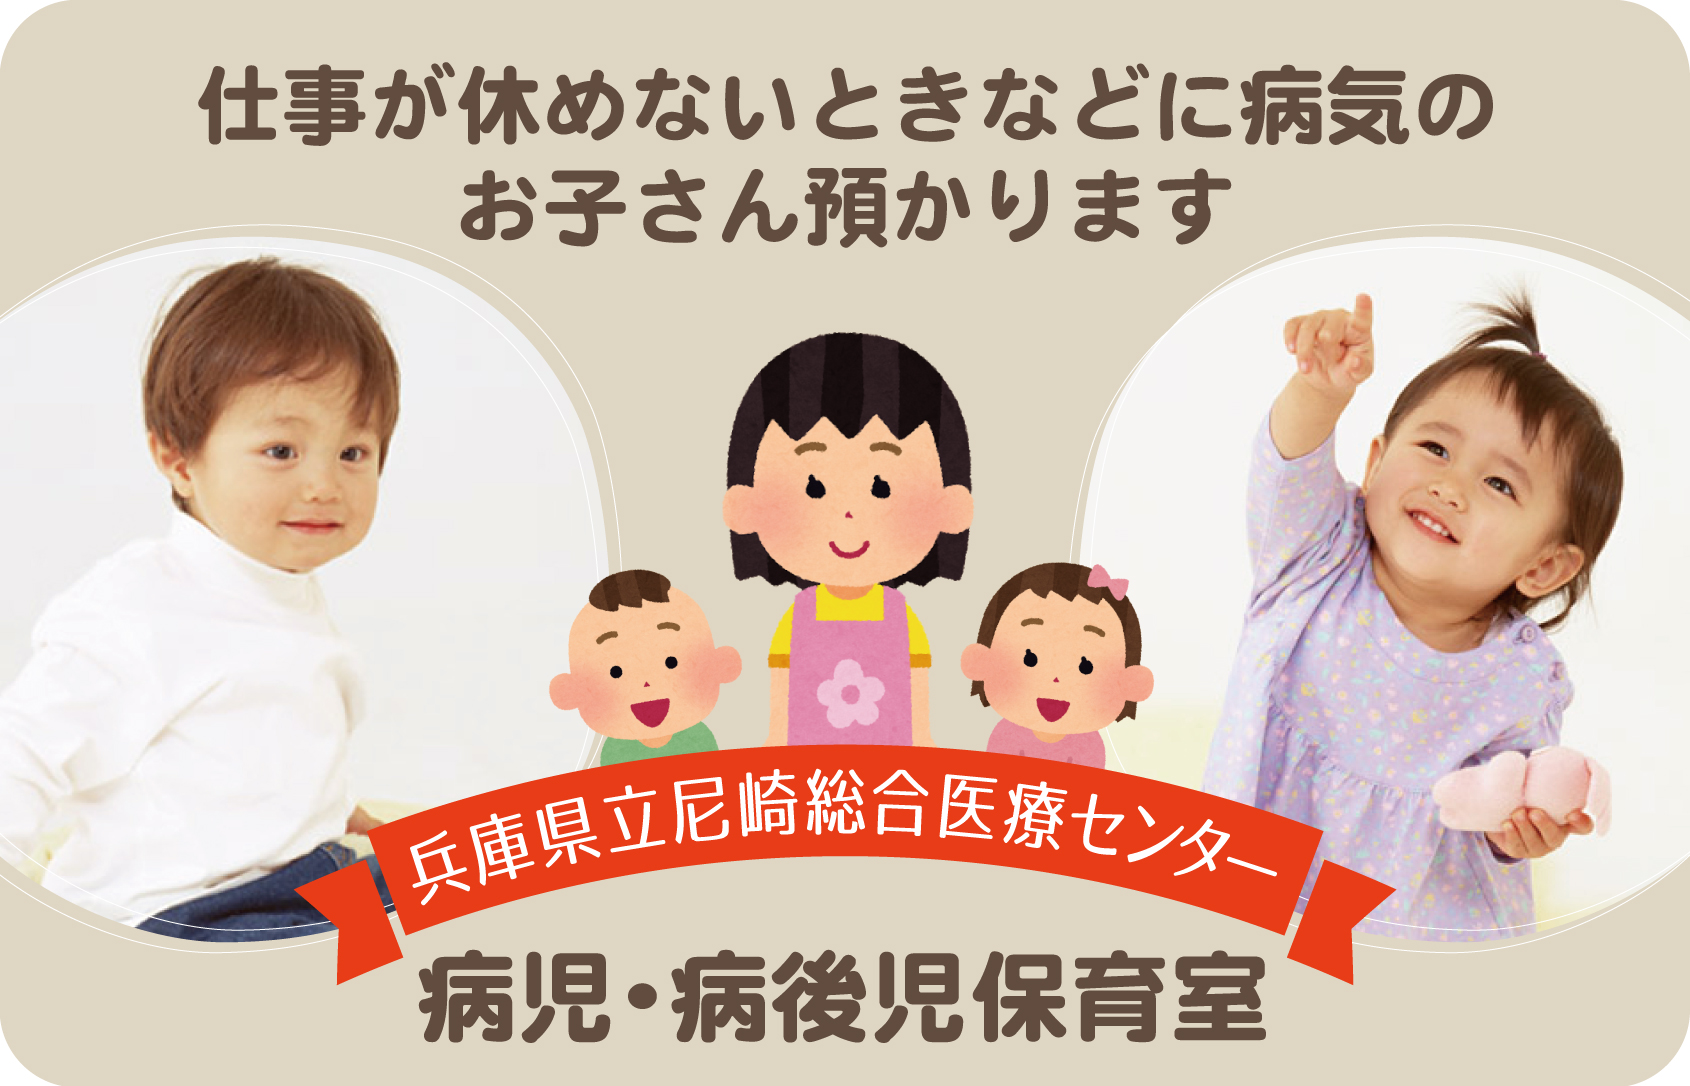 兵庫県立尼崎総合医療センターの病児・病後児保育室では、仕事が休めないときなどに病気のお子さんをお預かりします。